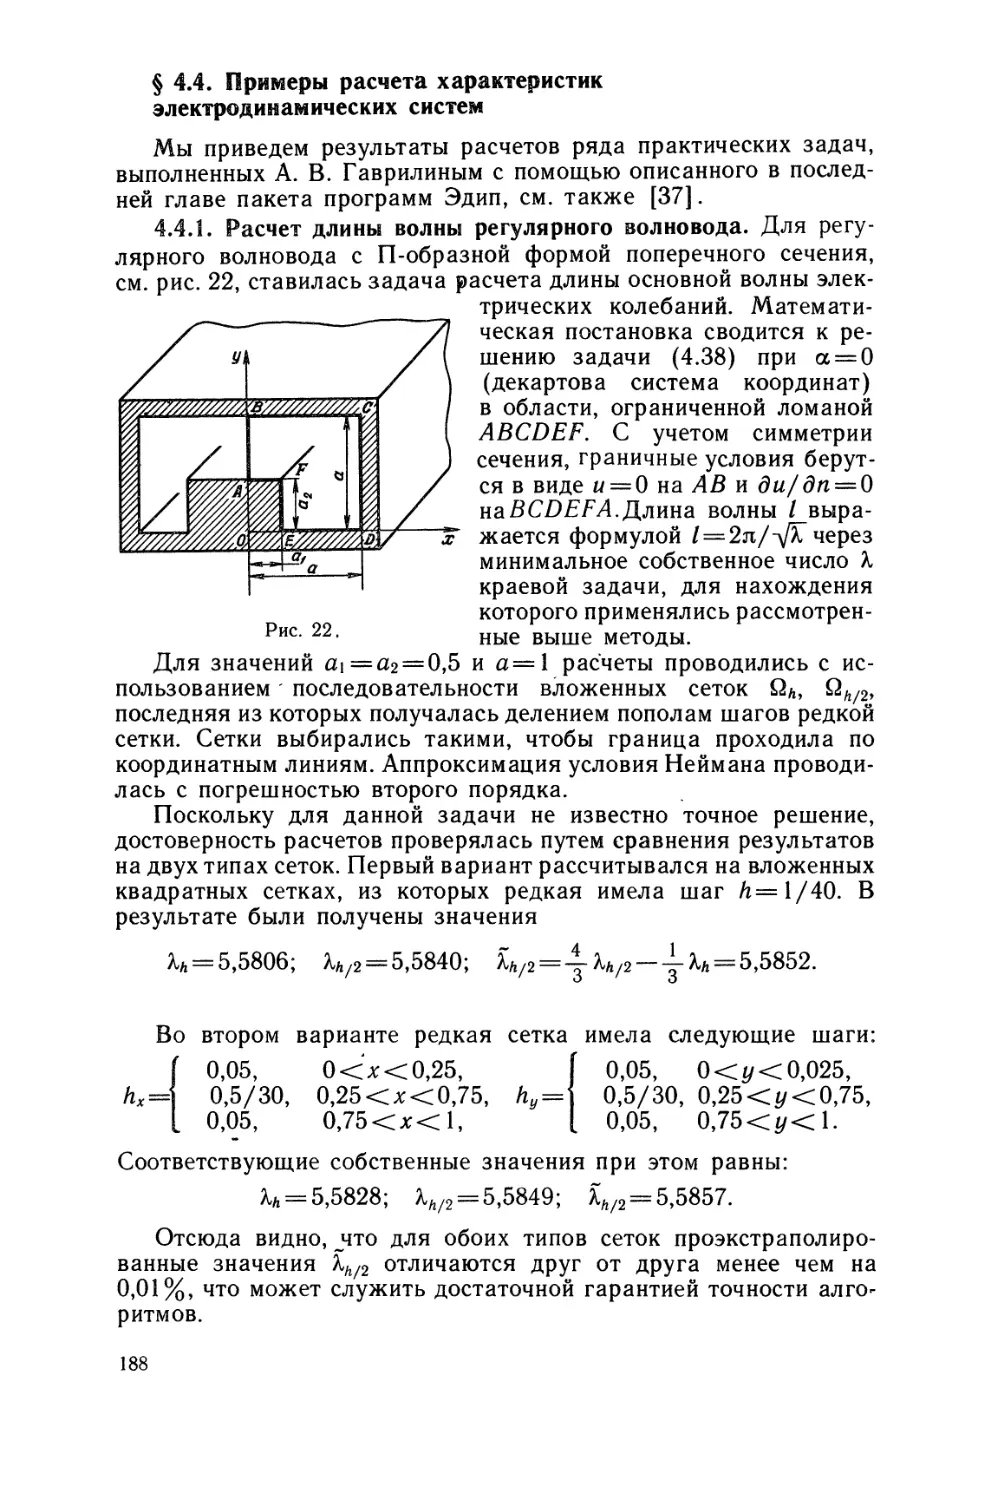 § 4.4. Примеры расчета характеристик электродинамических систем.